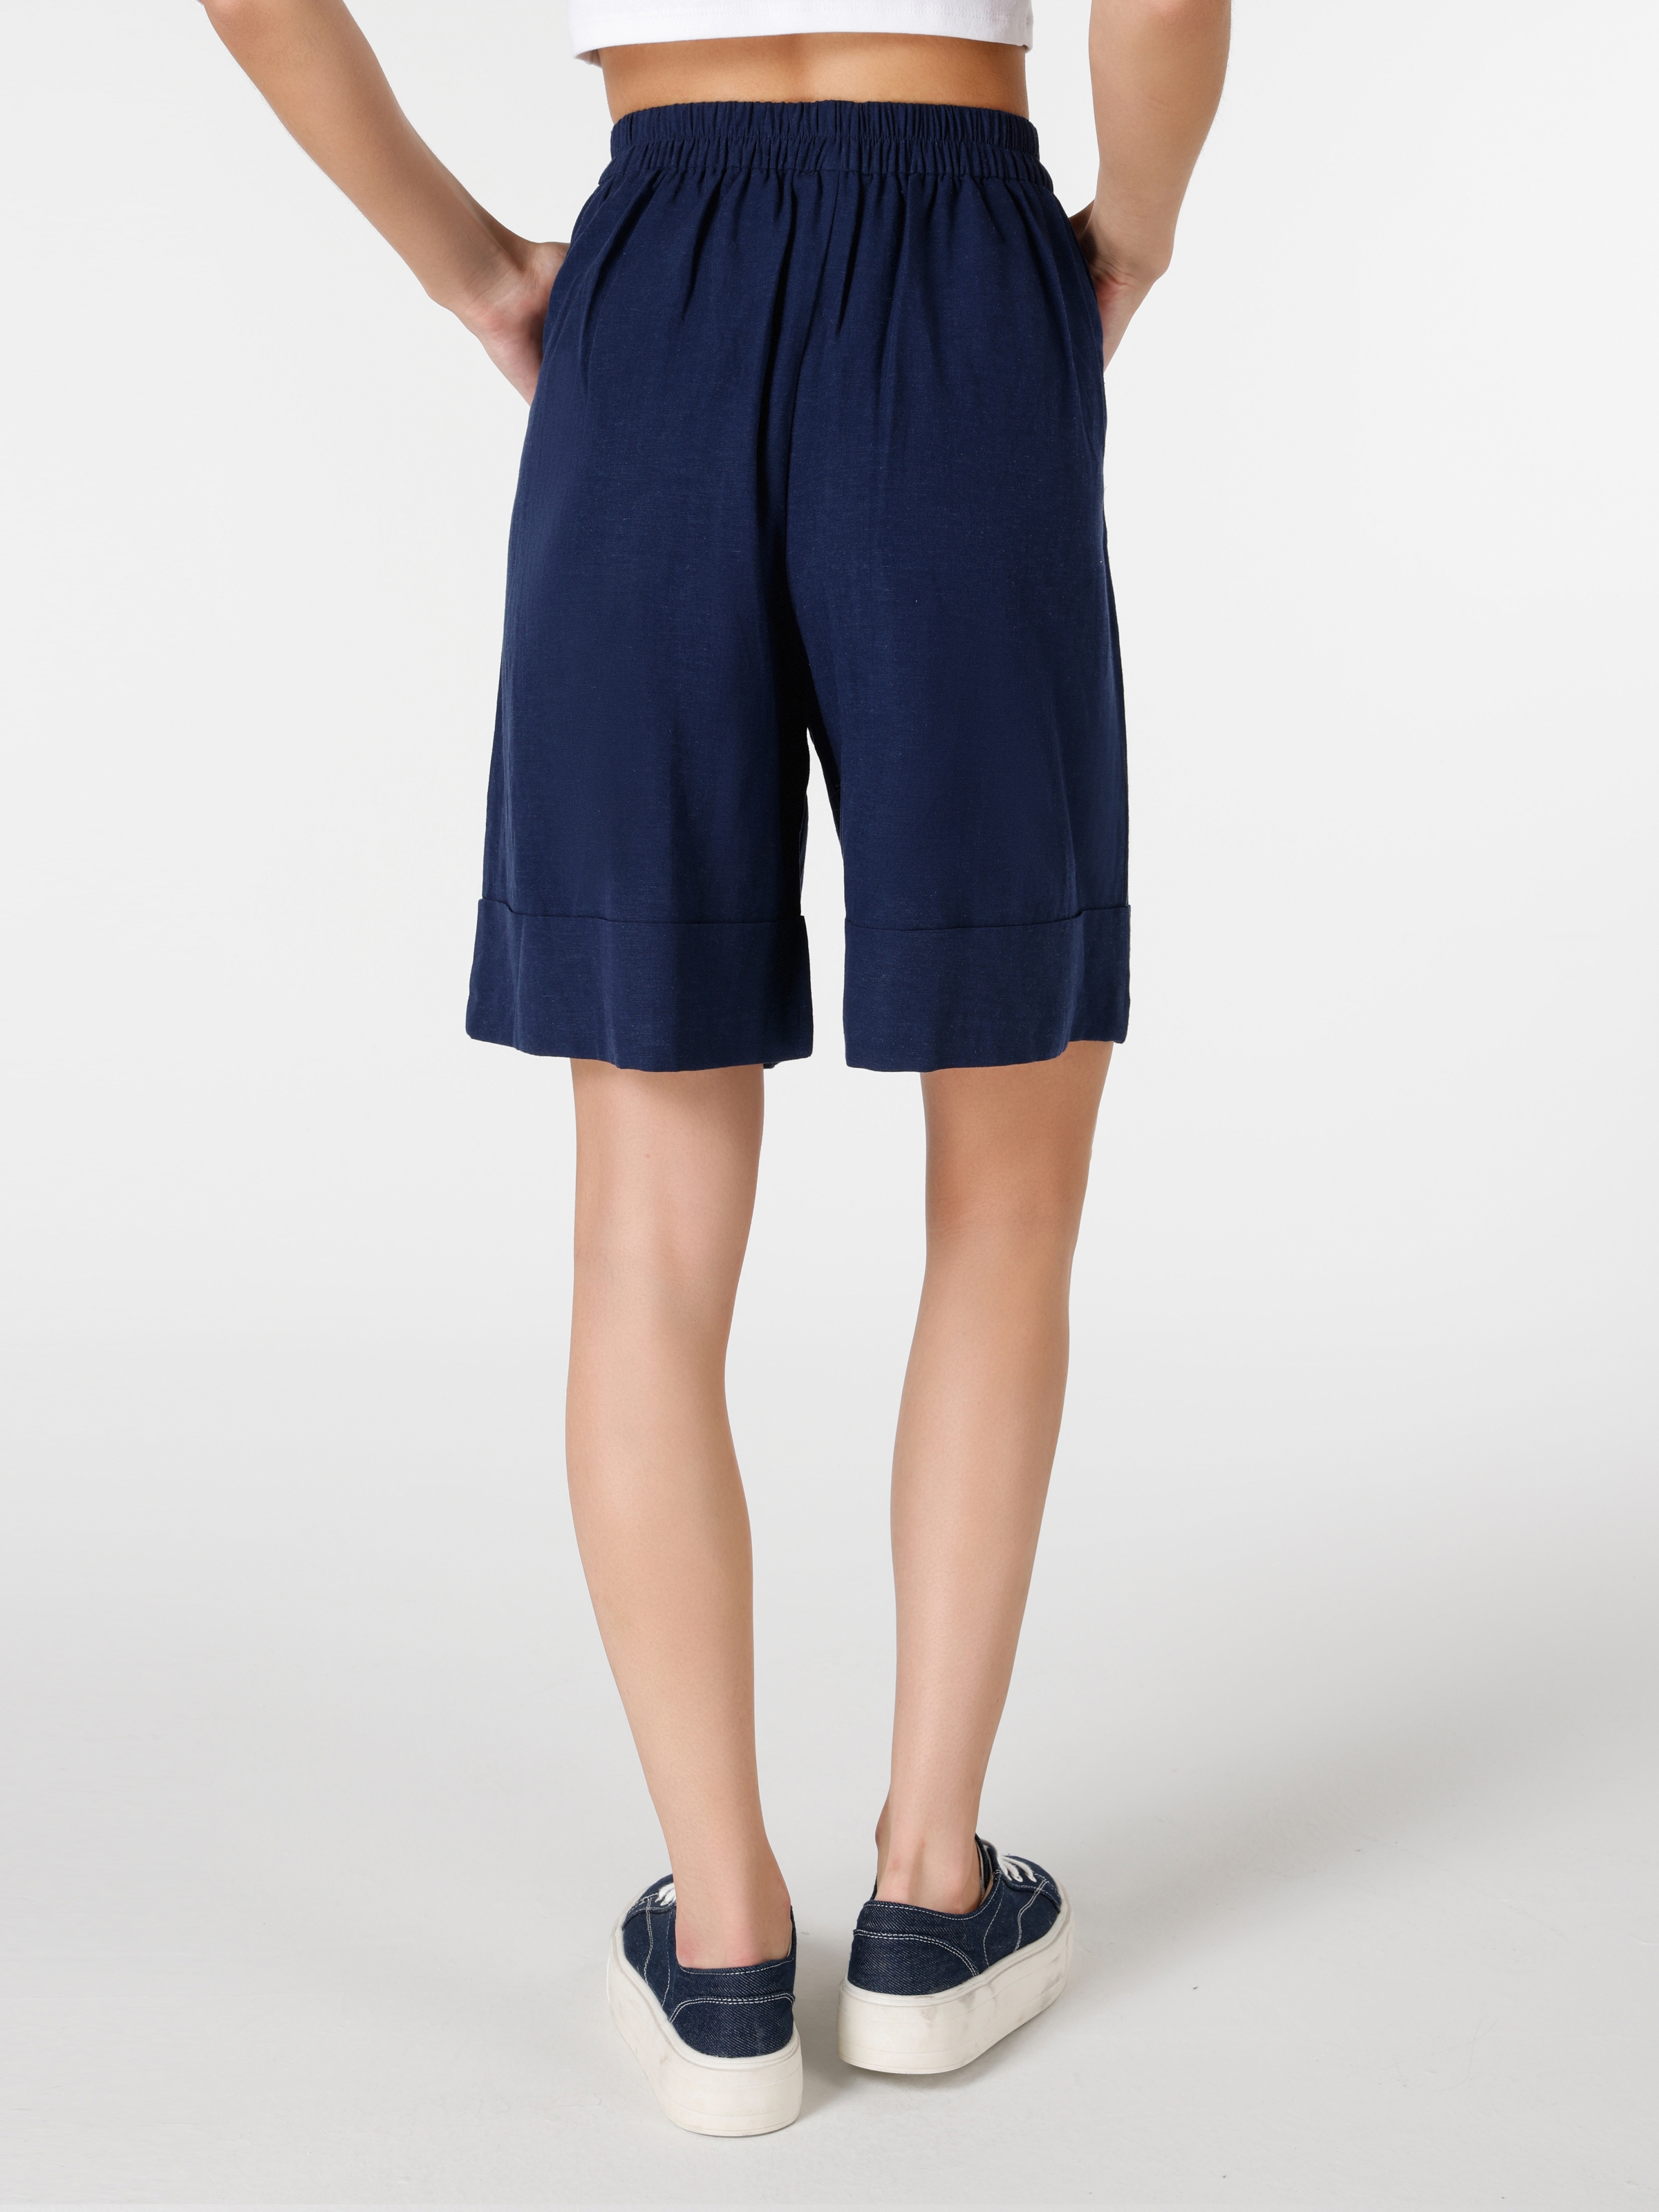 Afișați detalii pentru Short / Pantaloni Scurti De Dama Albastru Marin Regular Fit 